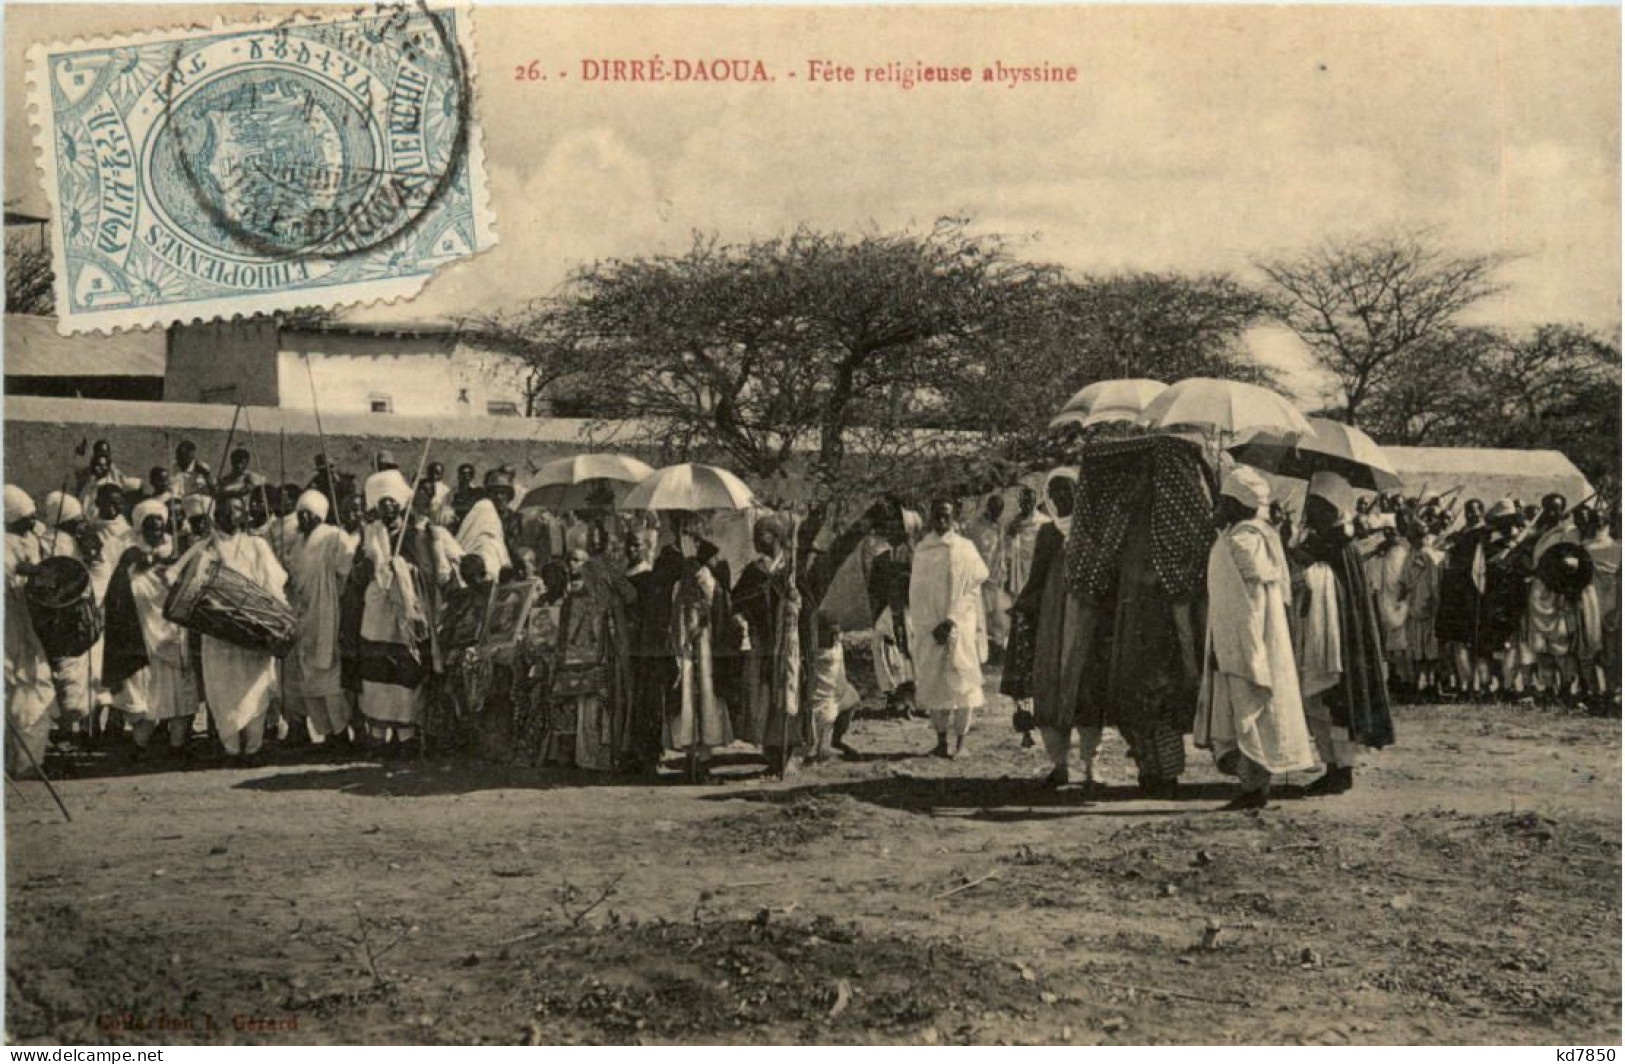 Ethiopie - Dirre-Daoua - Ethiopie